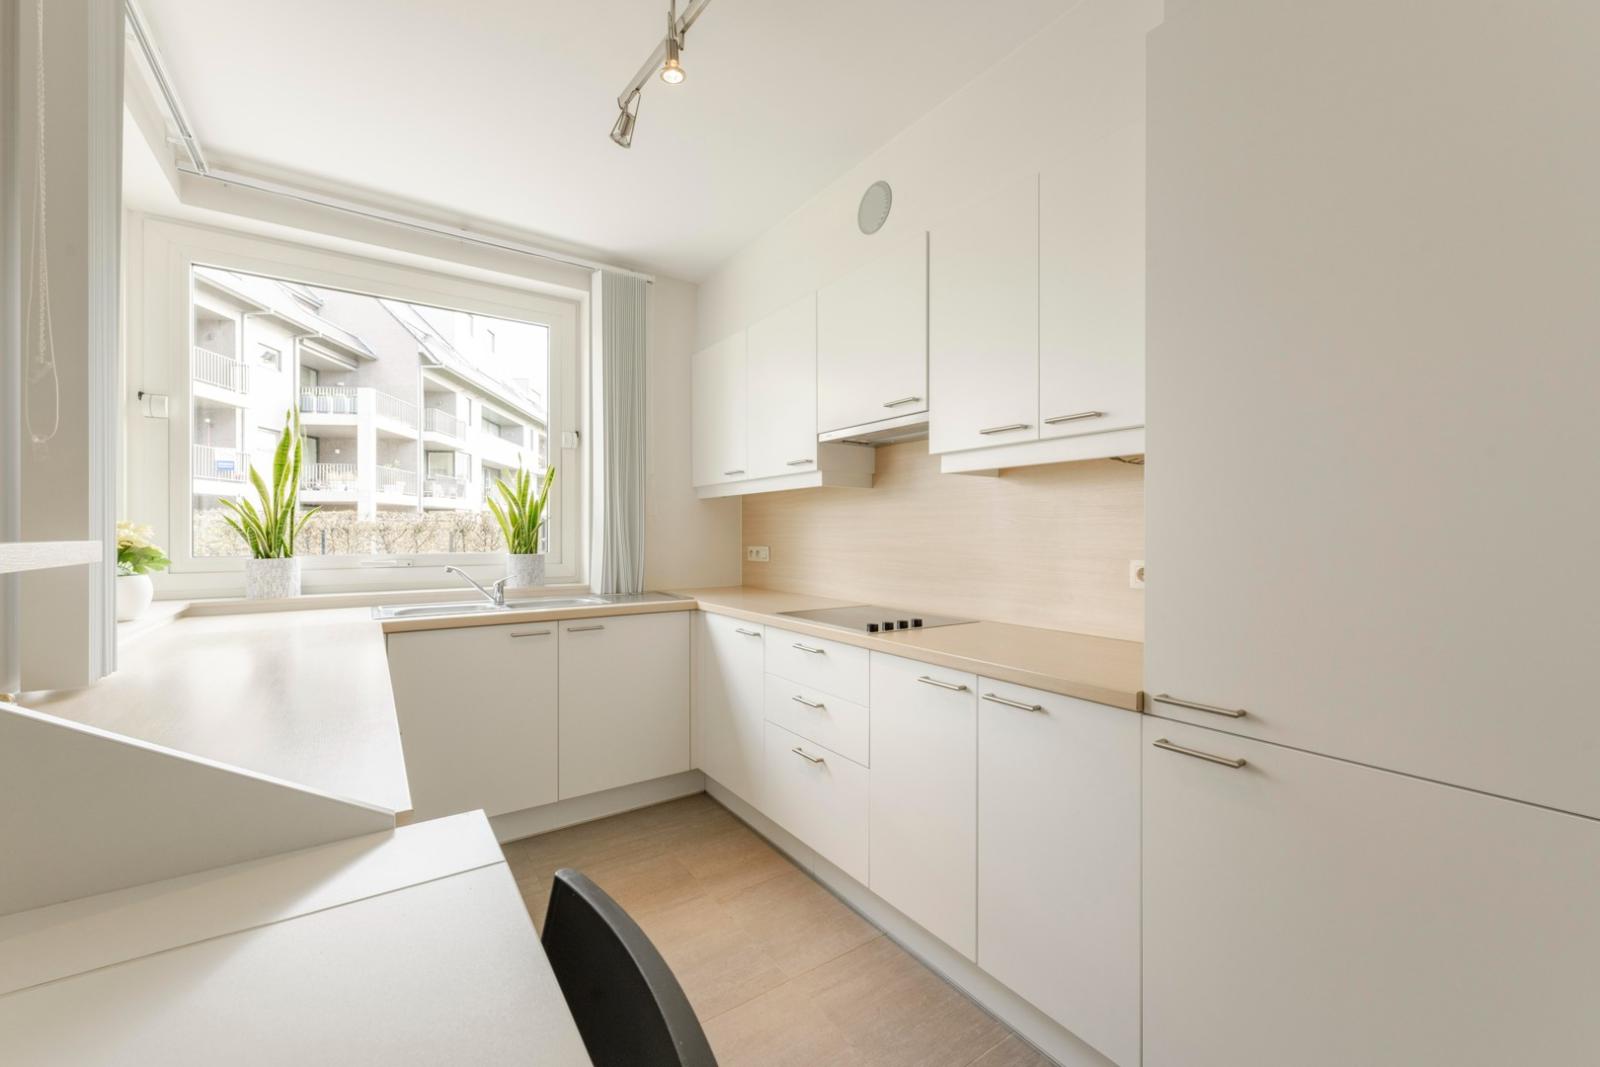 Recent gelijkvloers appartement met 2 slaapkamers vlakbij Centrum Tielt!